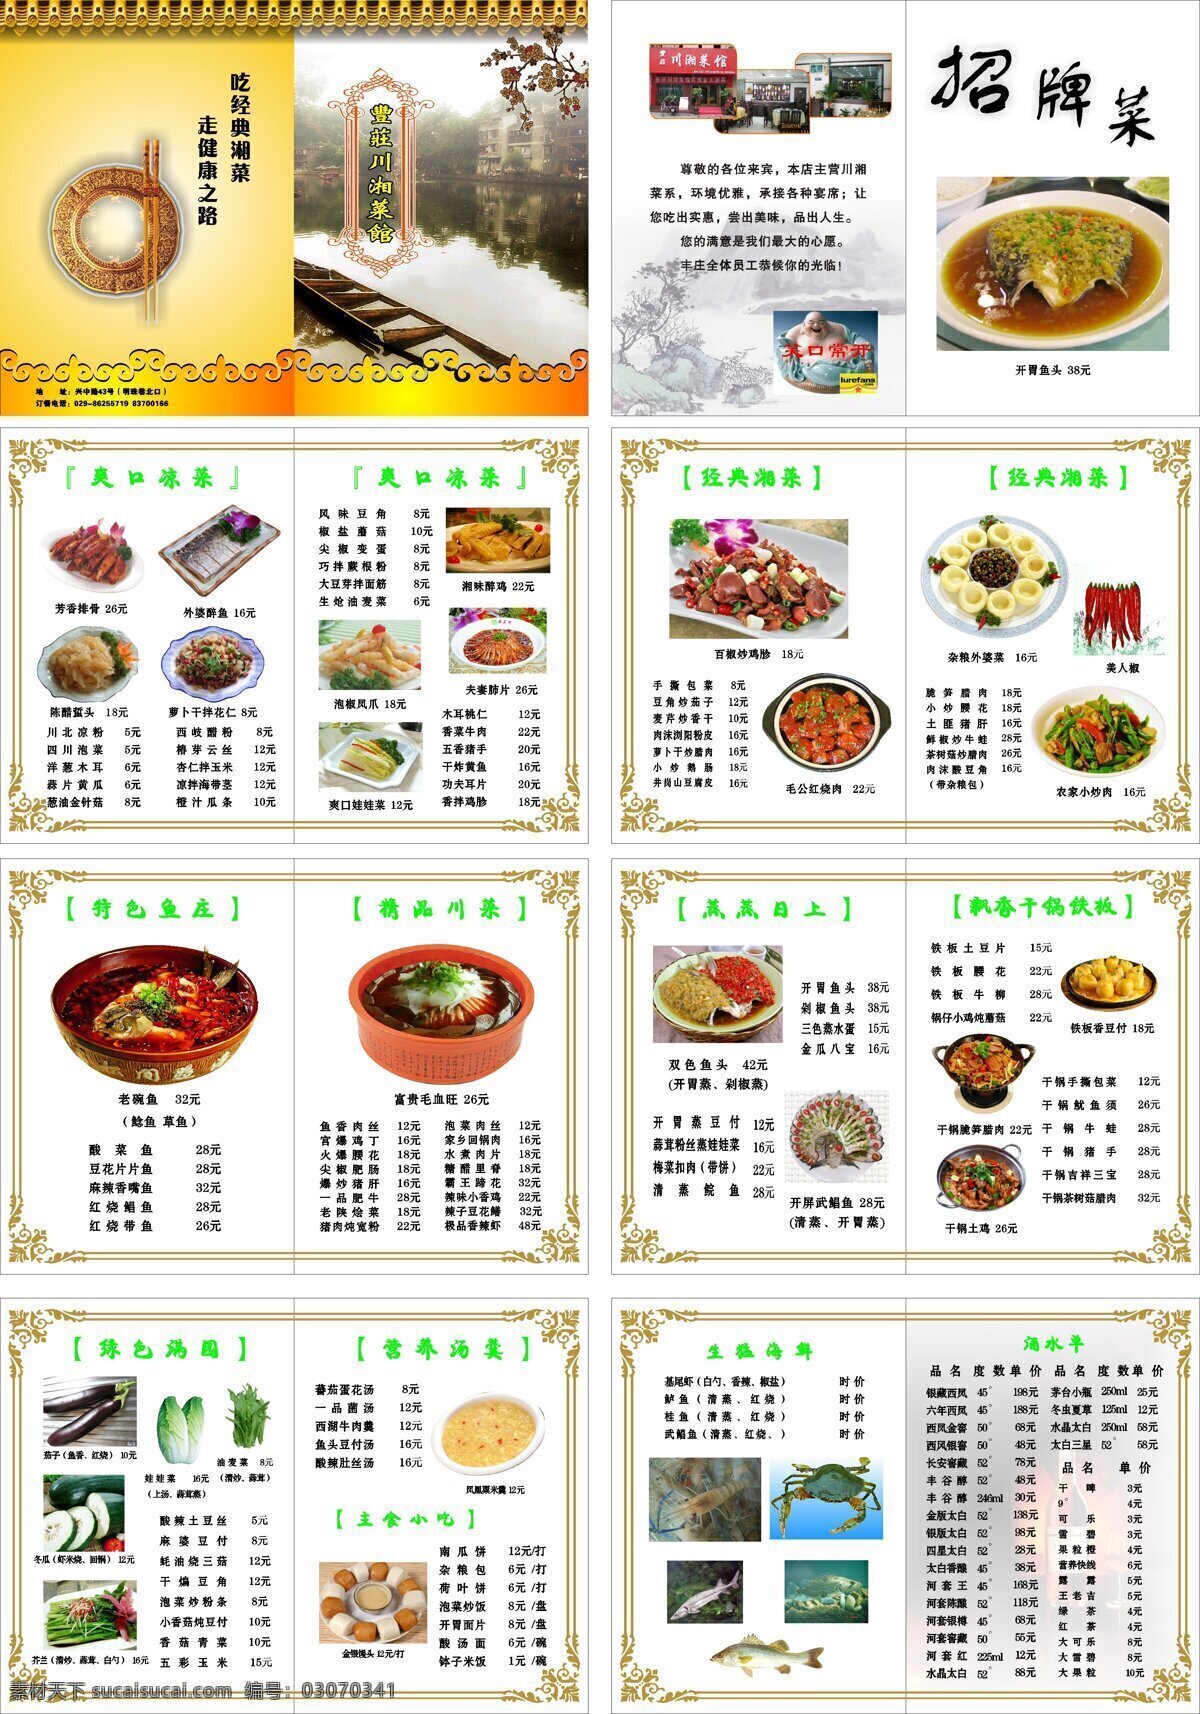 丰庄川湘菜馆 菜单菜谱 食品餐饮 矢量cdr 酒水单 设计素材 菜谱模板 平面模板 矢量图库 白色